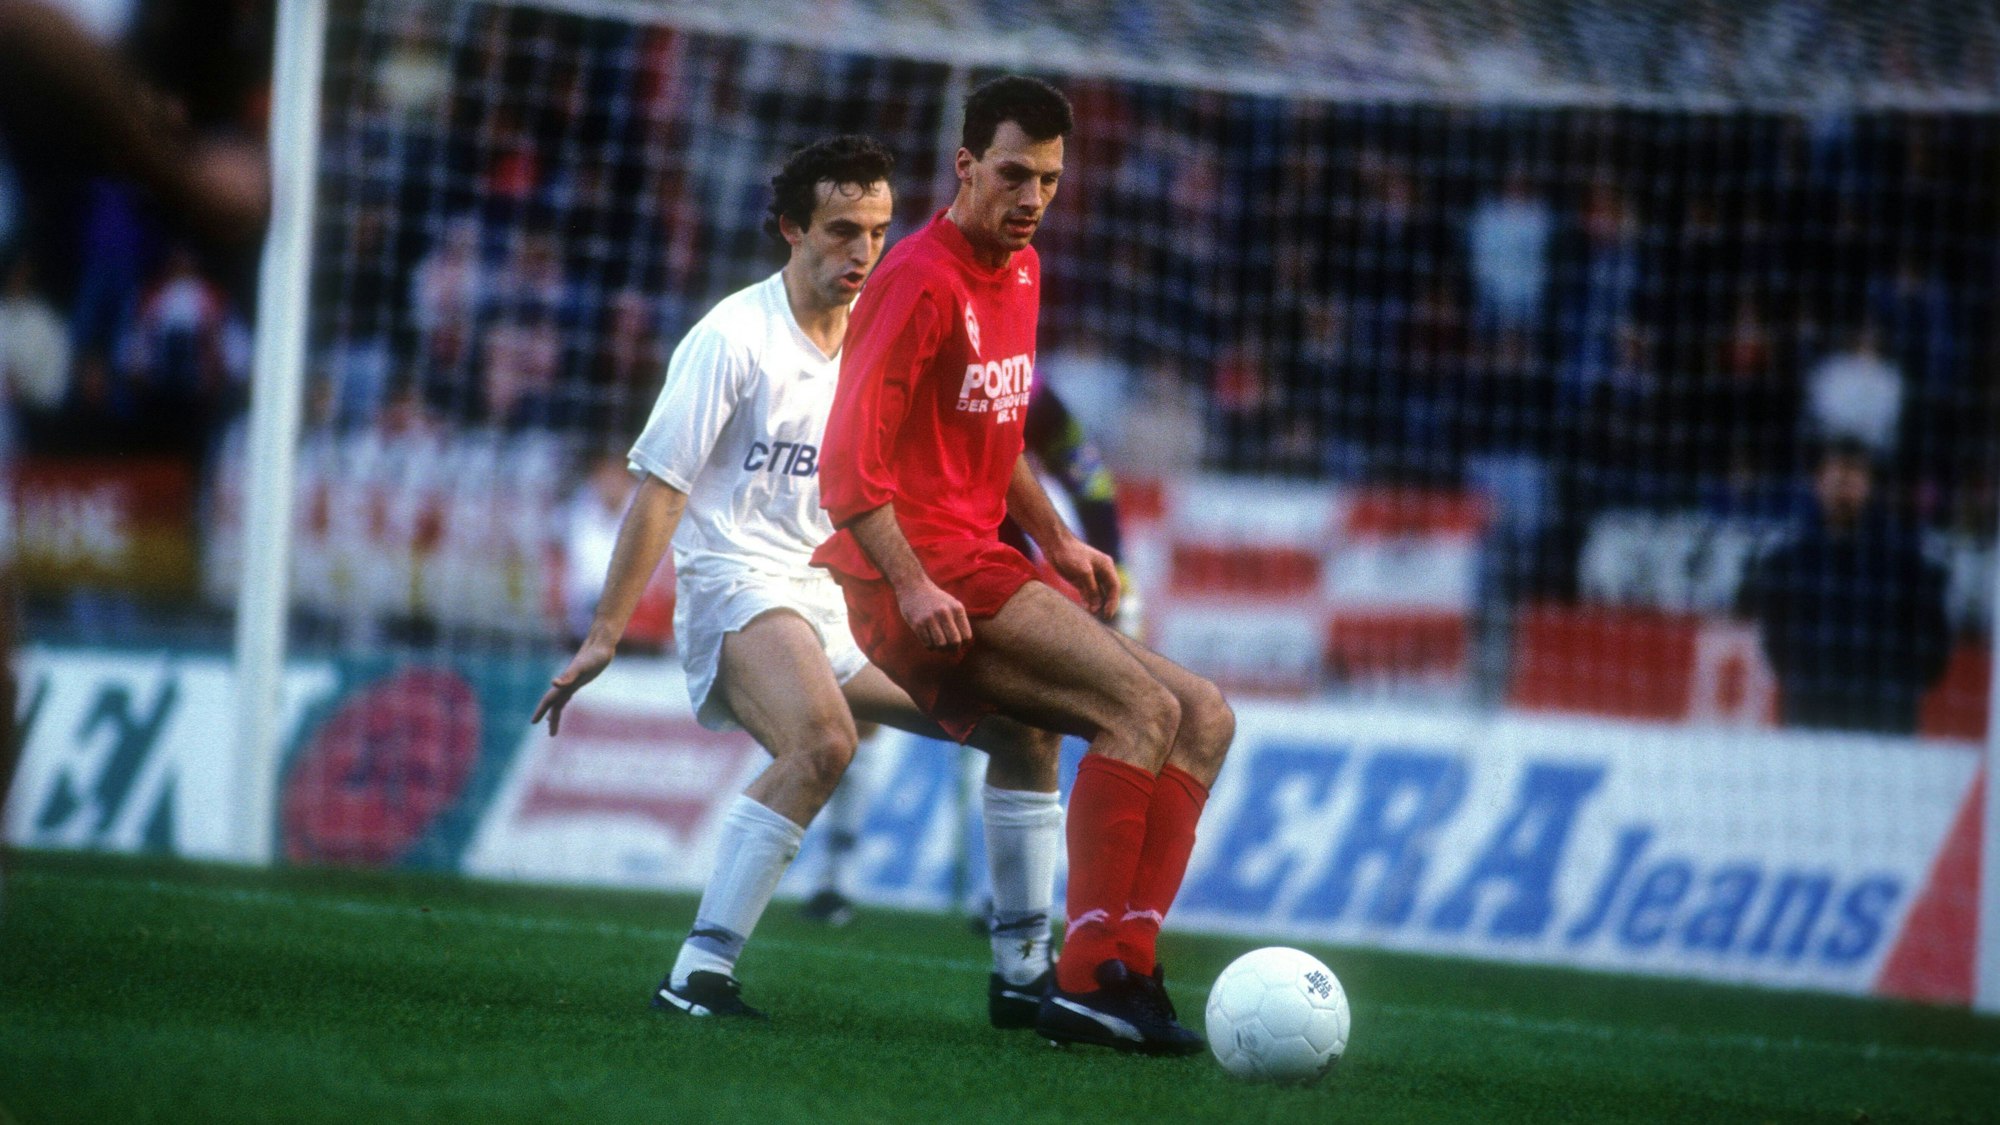 Frank Neubarth von Werder Bremen kämpft mit Frank Ordenewitz vom 1. FC Köln in einem Bundesliga-Spiel im Oktober 1991 um den Ball.